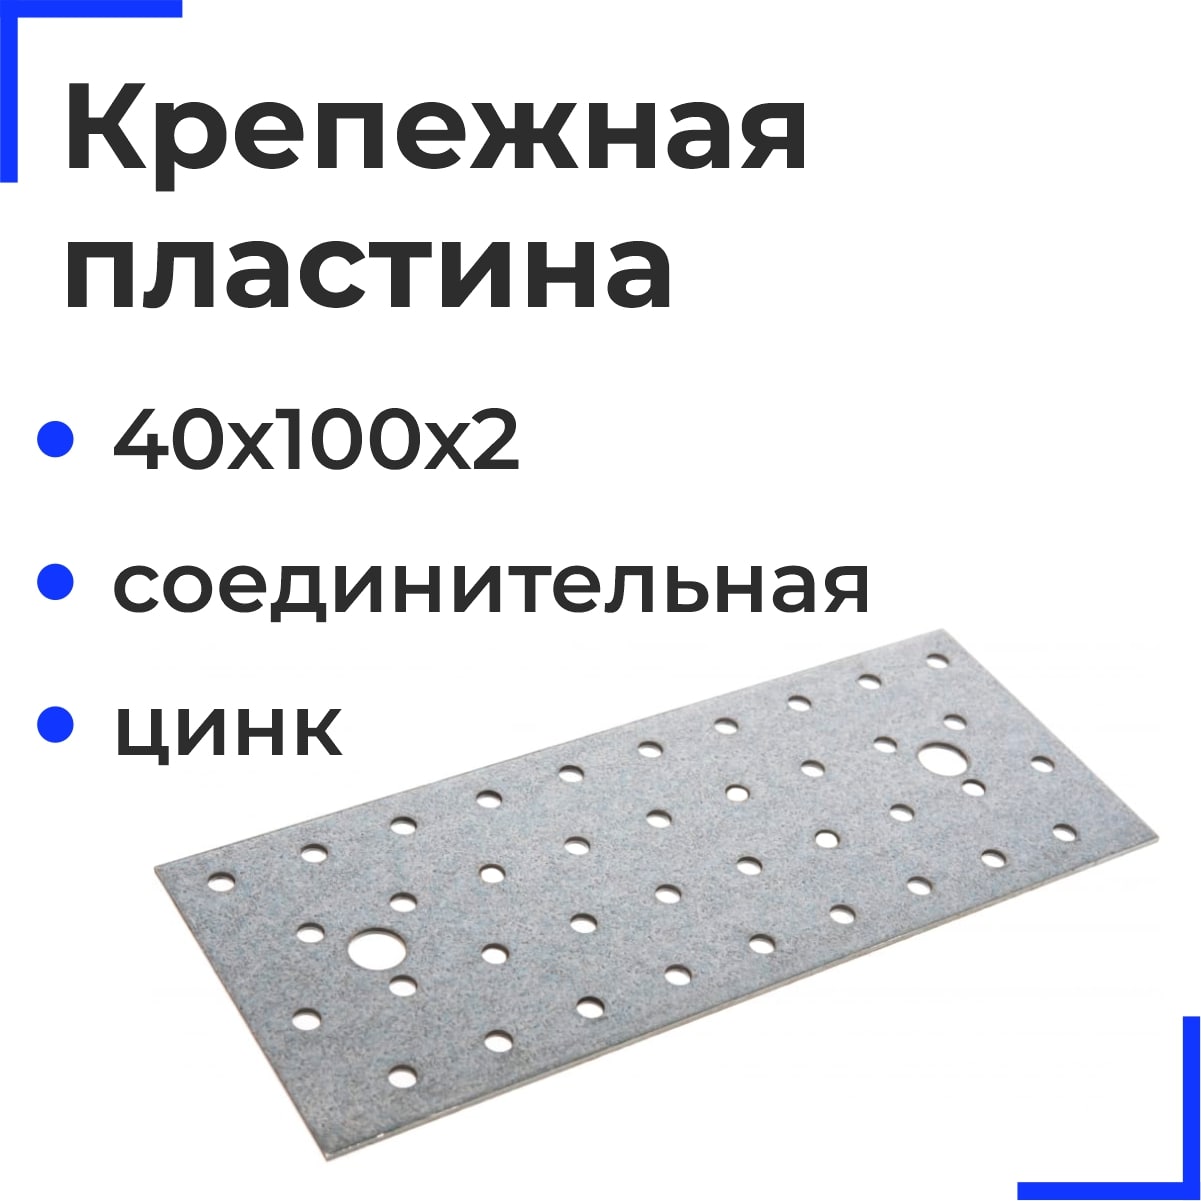 Крепежная пластина соединительная ОЦ 40х100х2 (50 шт)